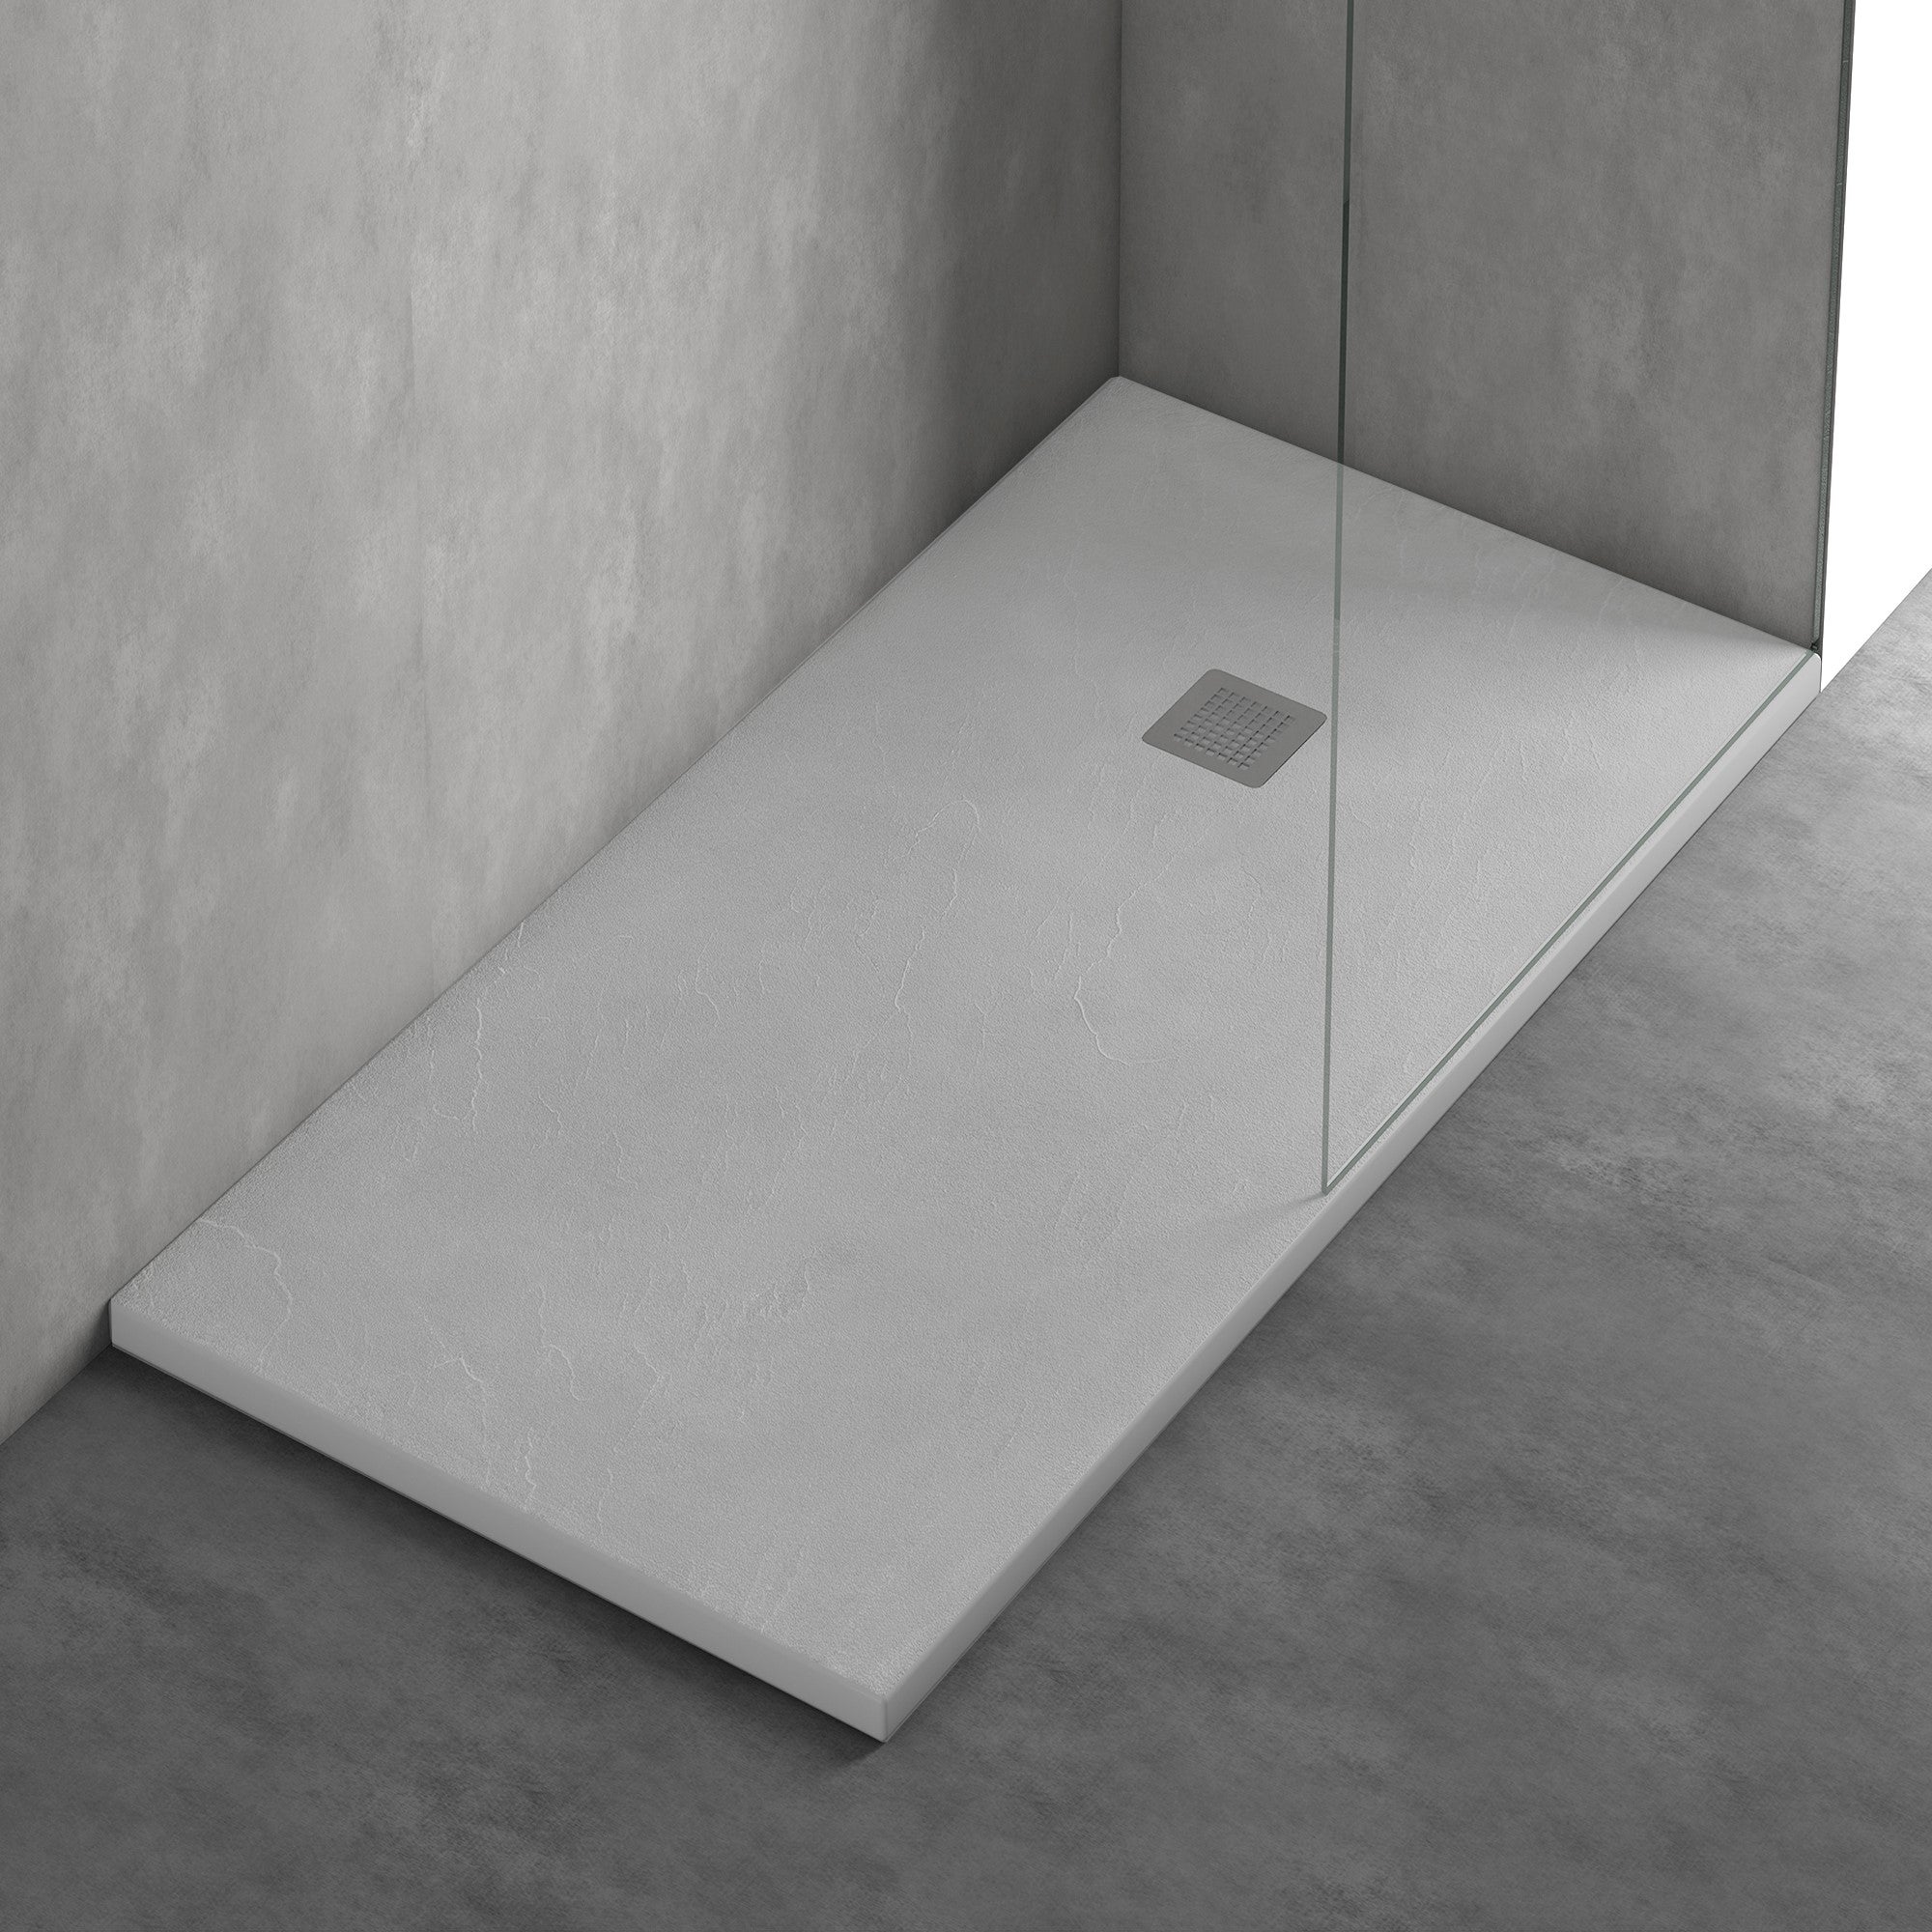 Plato de ducha rectangular de 80x120 cm fabricado con ABS con refuerzo de  fibra en color